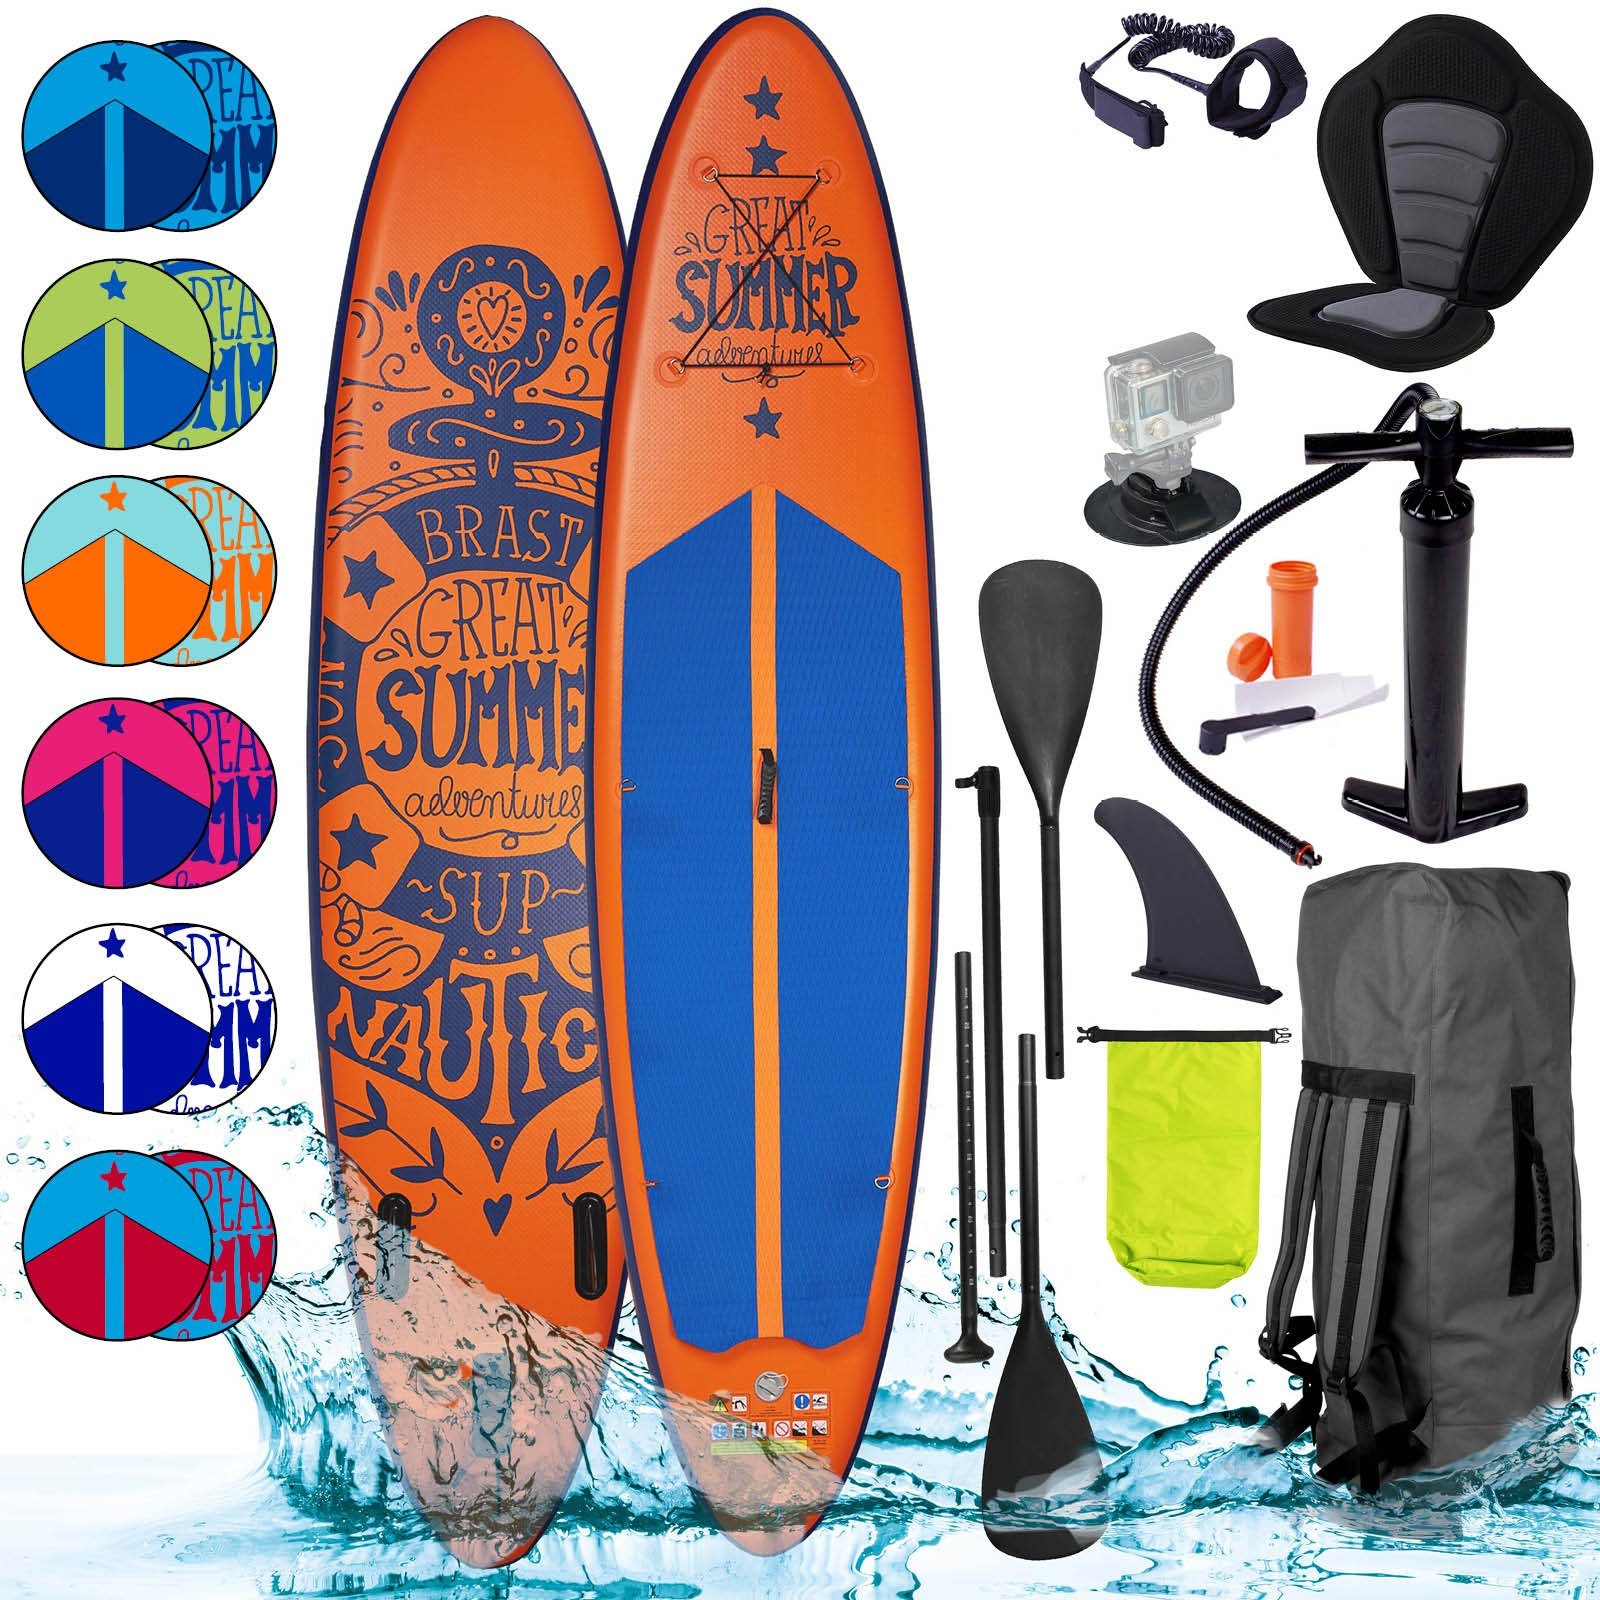 BRAST SUP-Board Summer Aufblasbares Stand up Paddle Set - 320x81x15cm, 5  Jahre Garantie inkl. Sonderzubehör, (2in1 Paddel Kajak-Sitz  Action-Cam-Halterung), Fußschlaufe Paddel Pumpe Rucksack